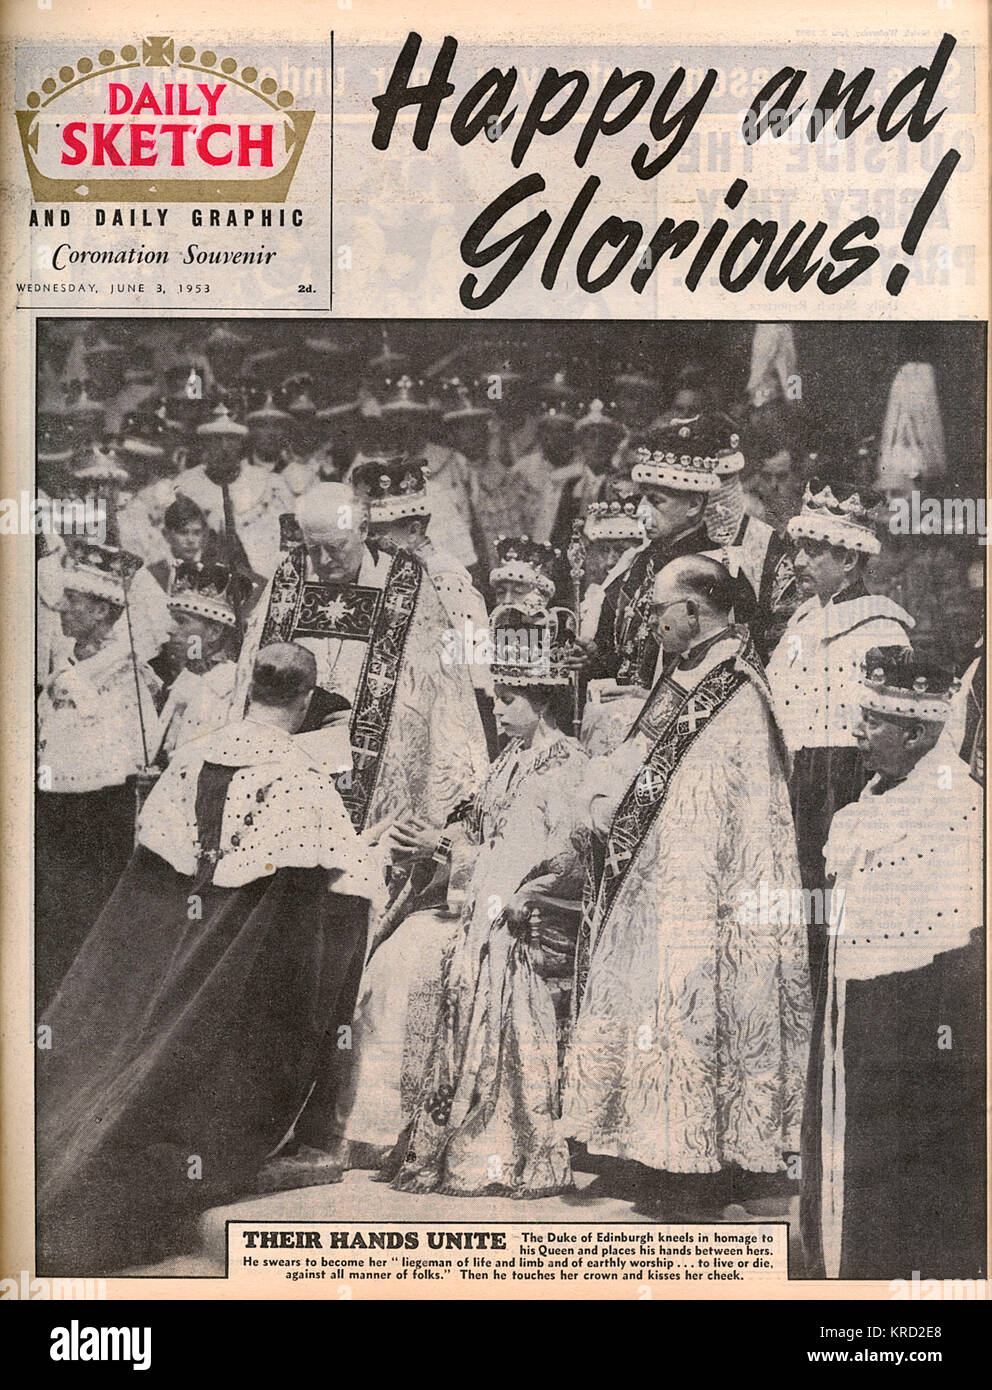 Coperchio anteriore del Daily Sketch magazine dal 3 giugno 1953, il giorno dopo l'incoronazione della Regina Elisabetta II con una fotografia del Duca di Edimburgo in omaggio a sua moglie dopo la cerimonia e la notizia "Happy &AMP; glorioso"! Data: 1953 Foto Stock